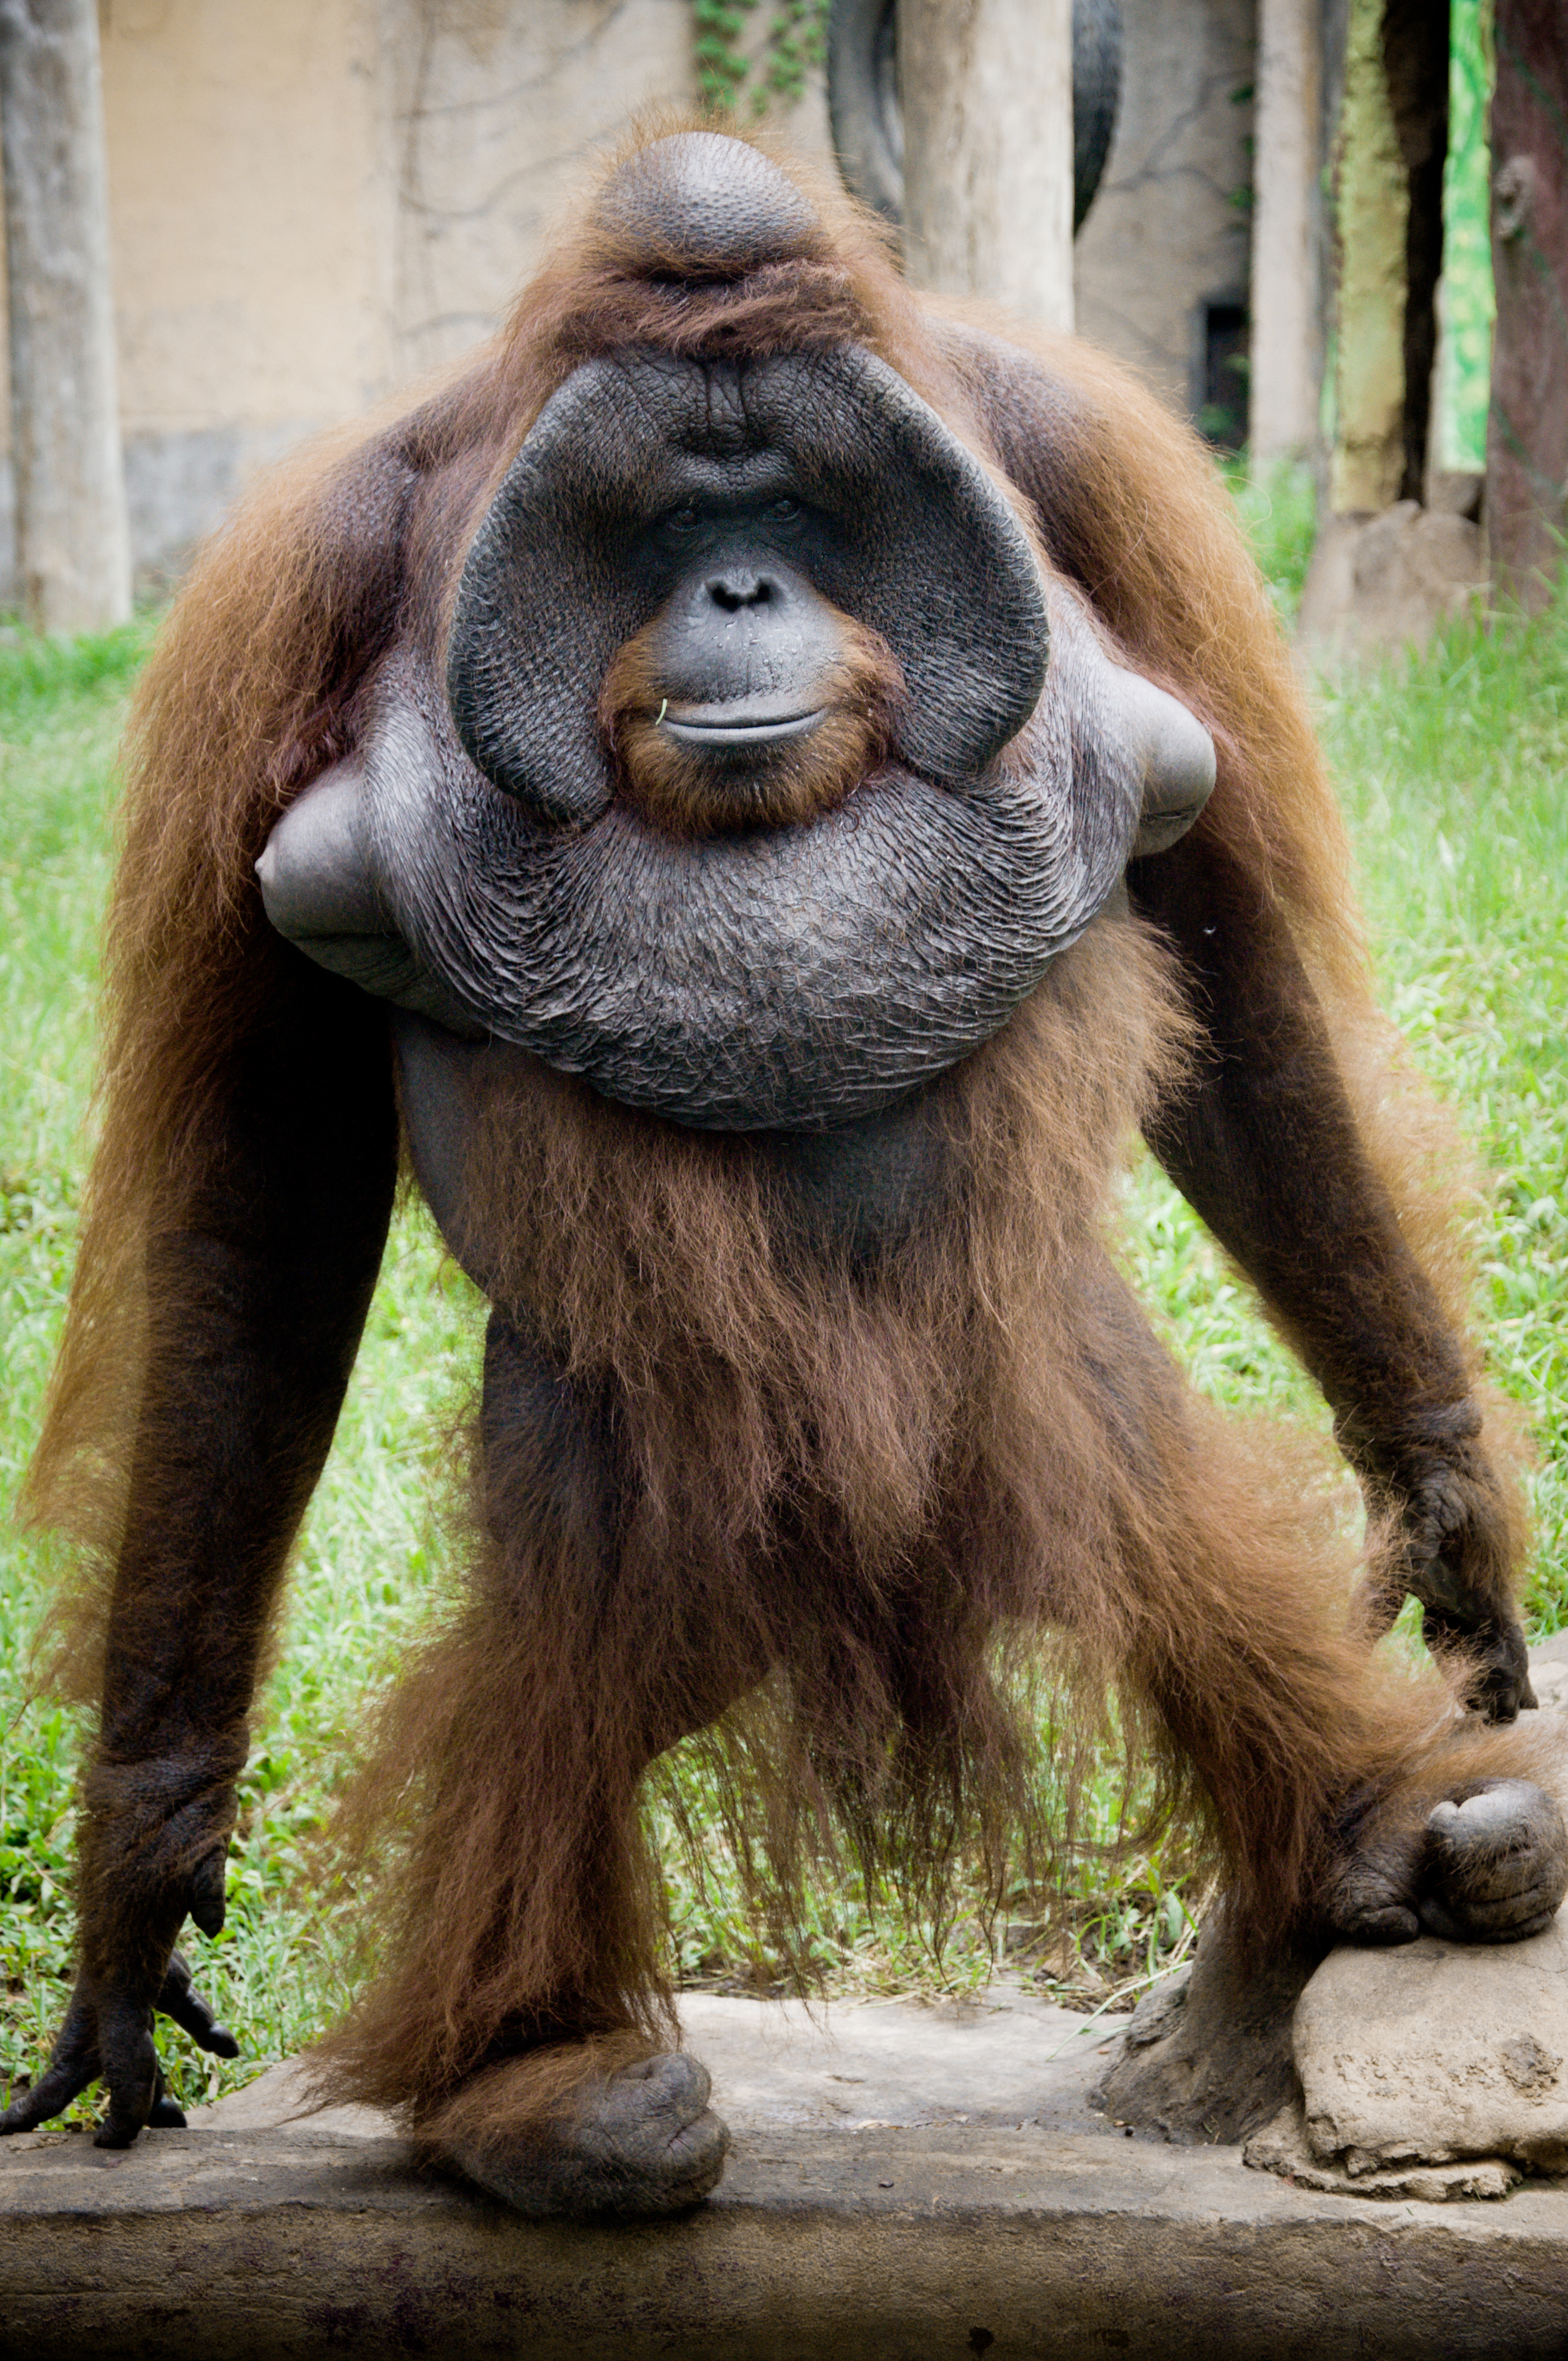 Orangutan photo